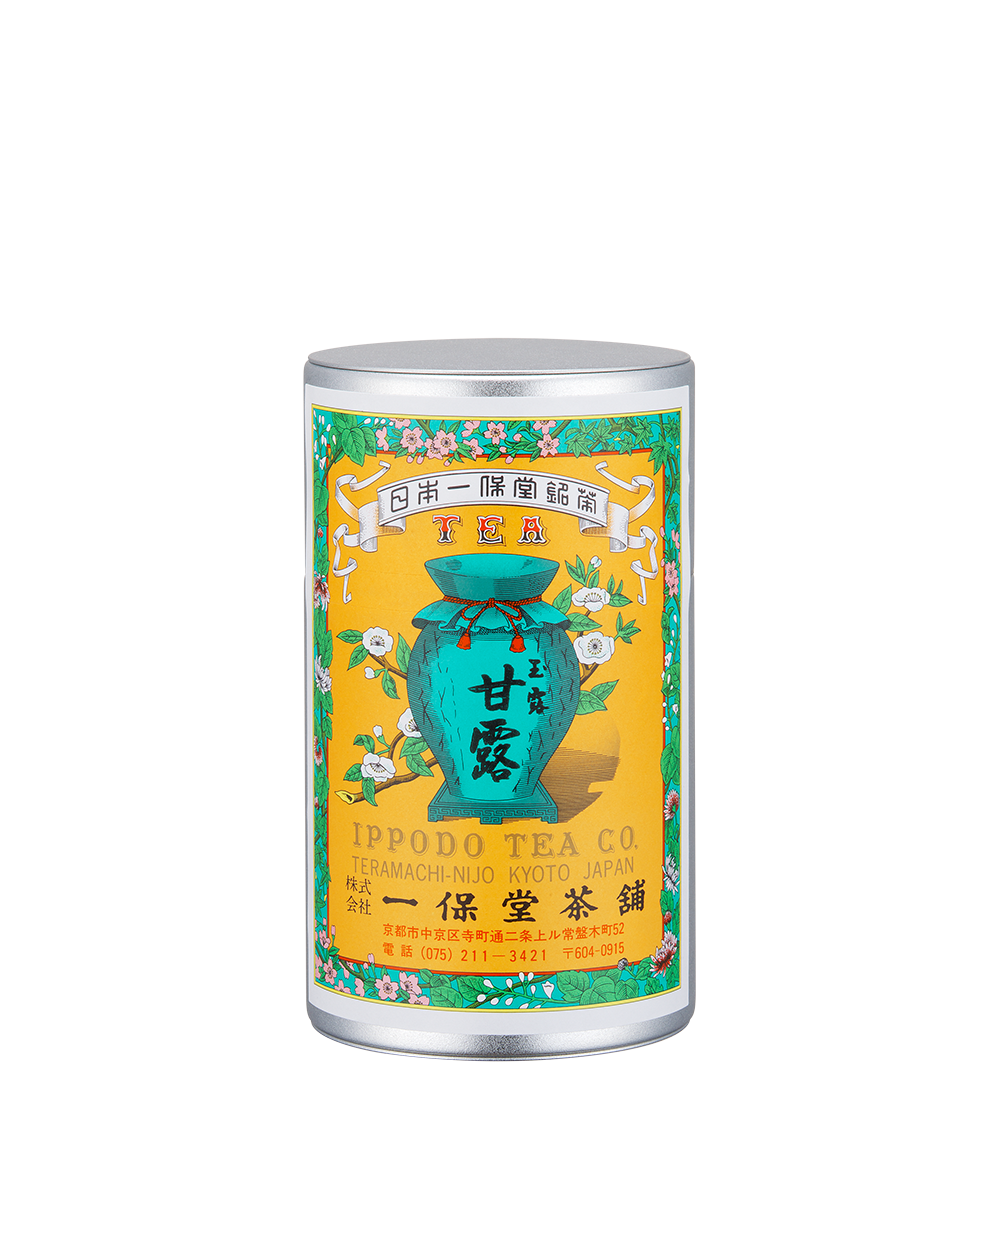 玉露 甘露(かんろ)中缶箱(180g) – 一保堂茶舗